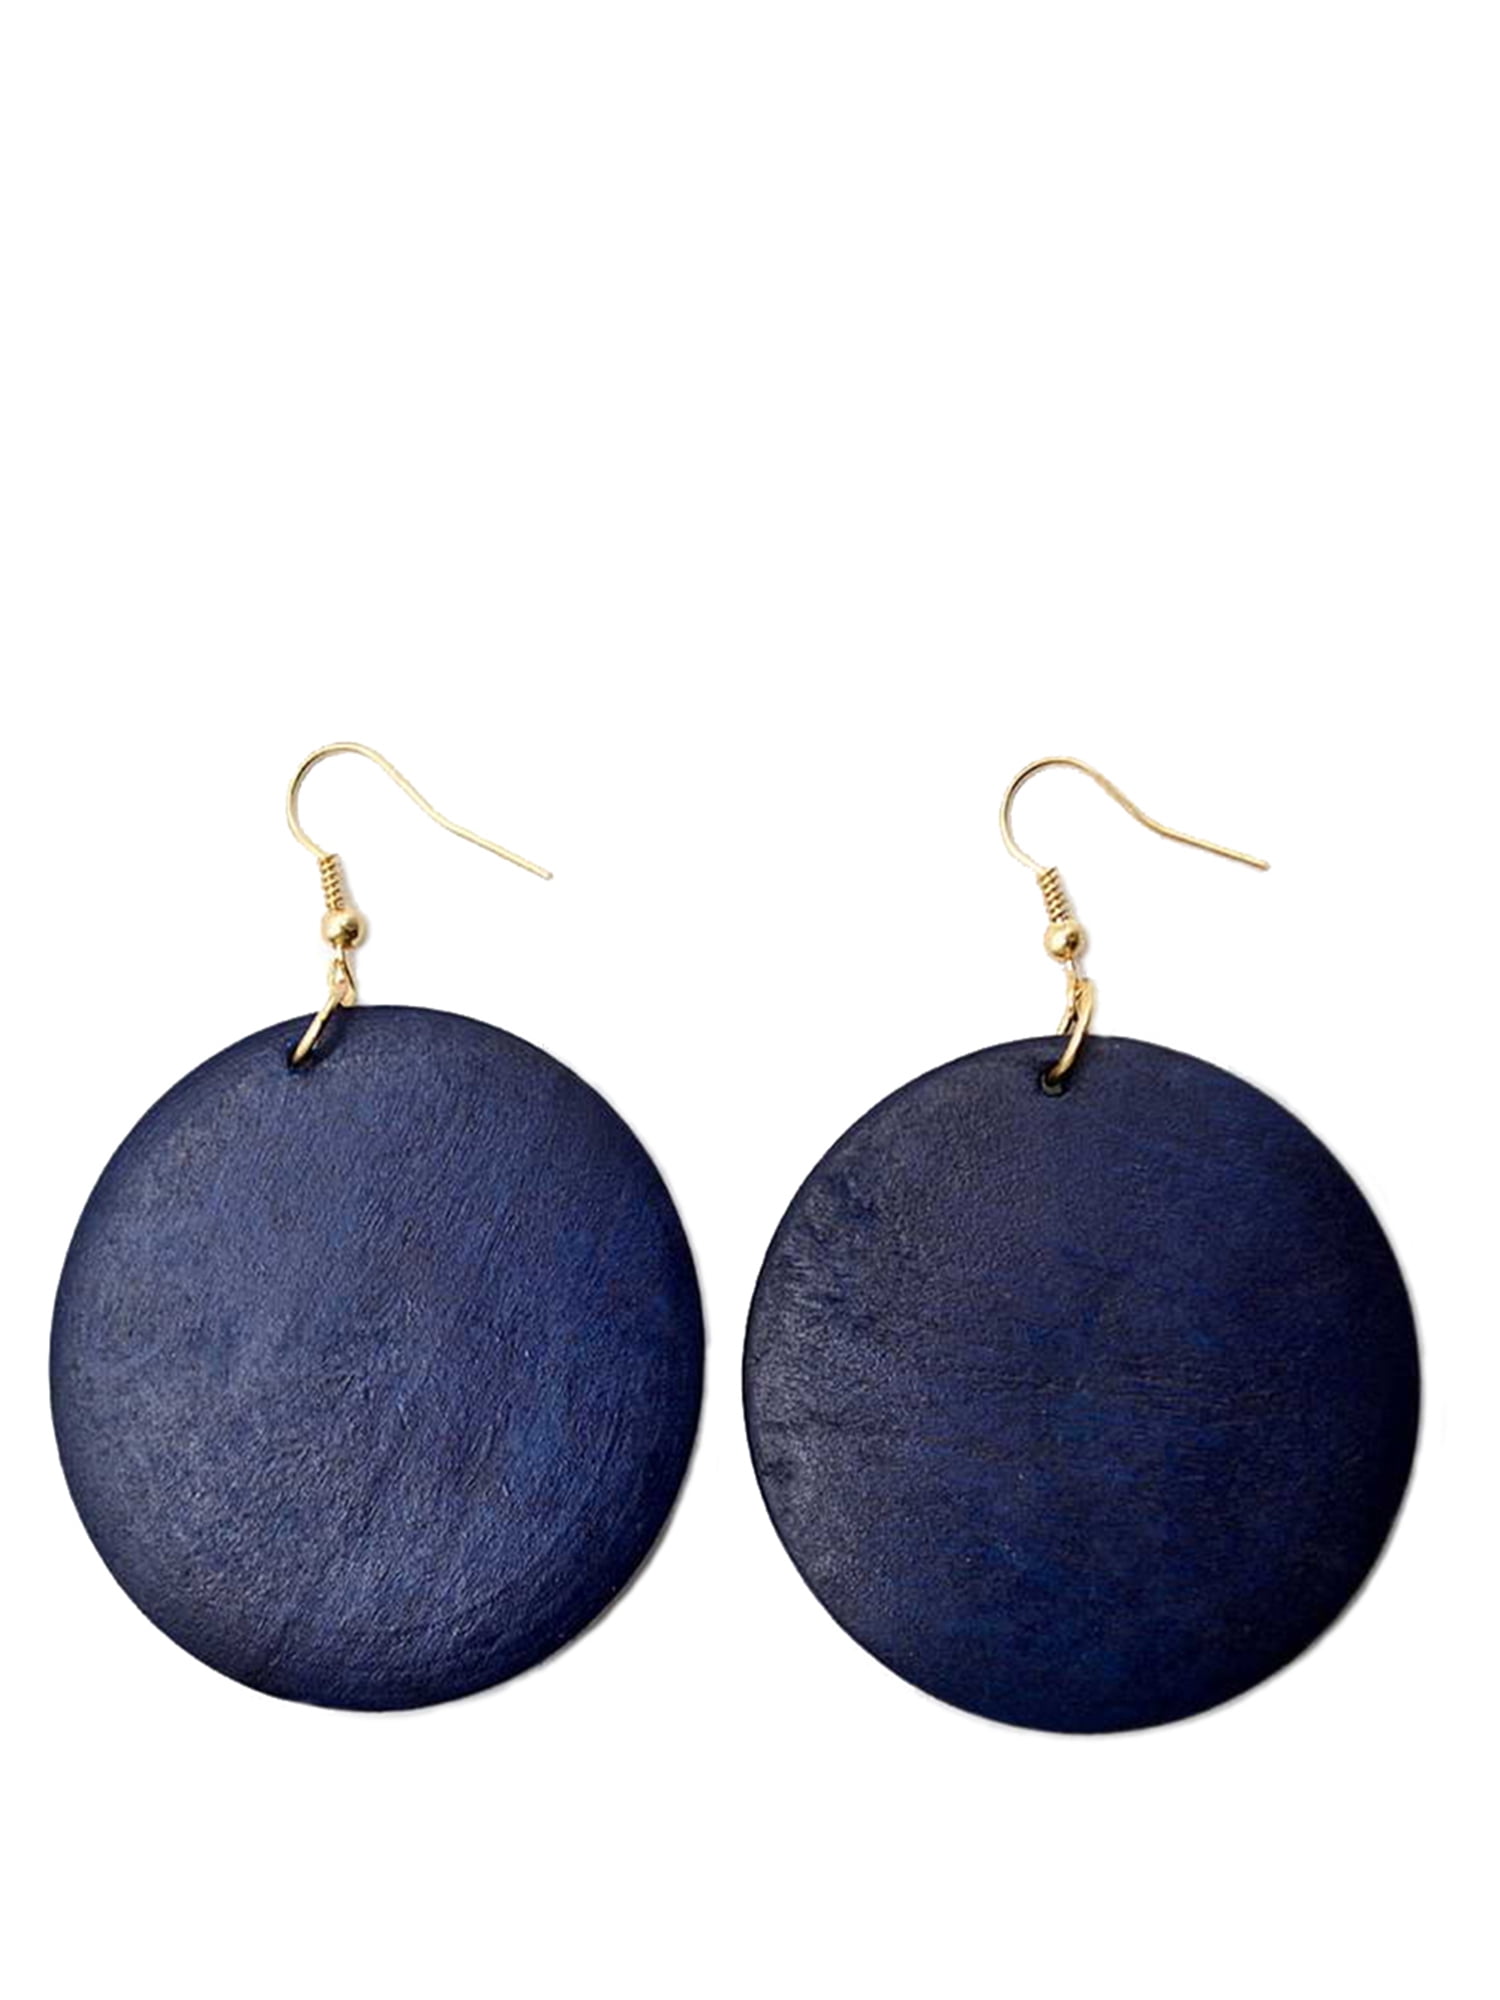 dangle earrings royal blue Dangle wood boho earrings natural wood earrings gift for her dangle wood boho jewelry custom boho earrings